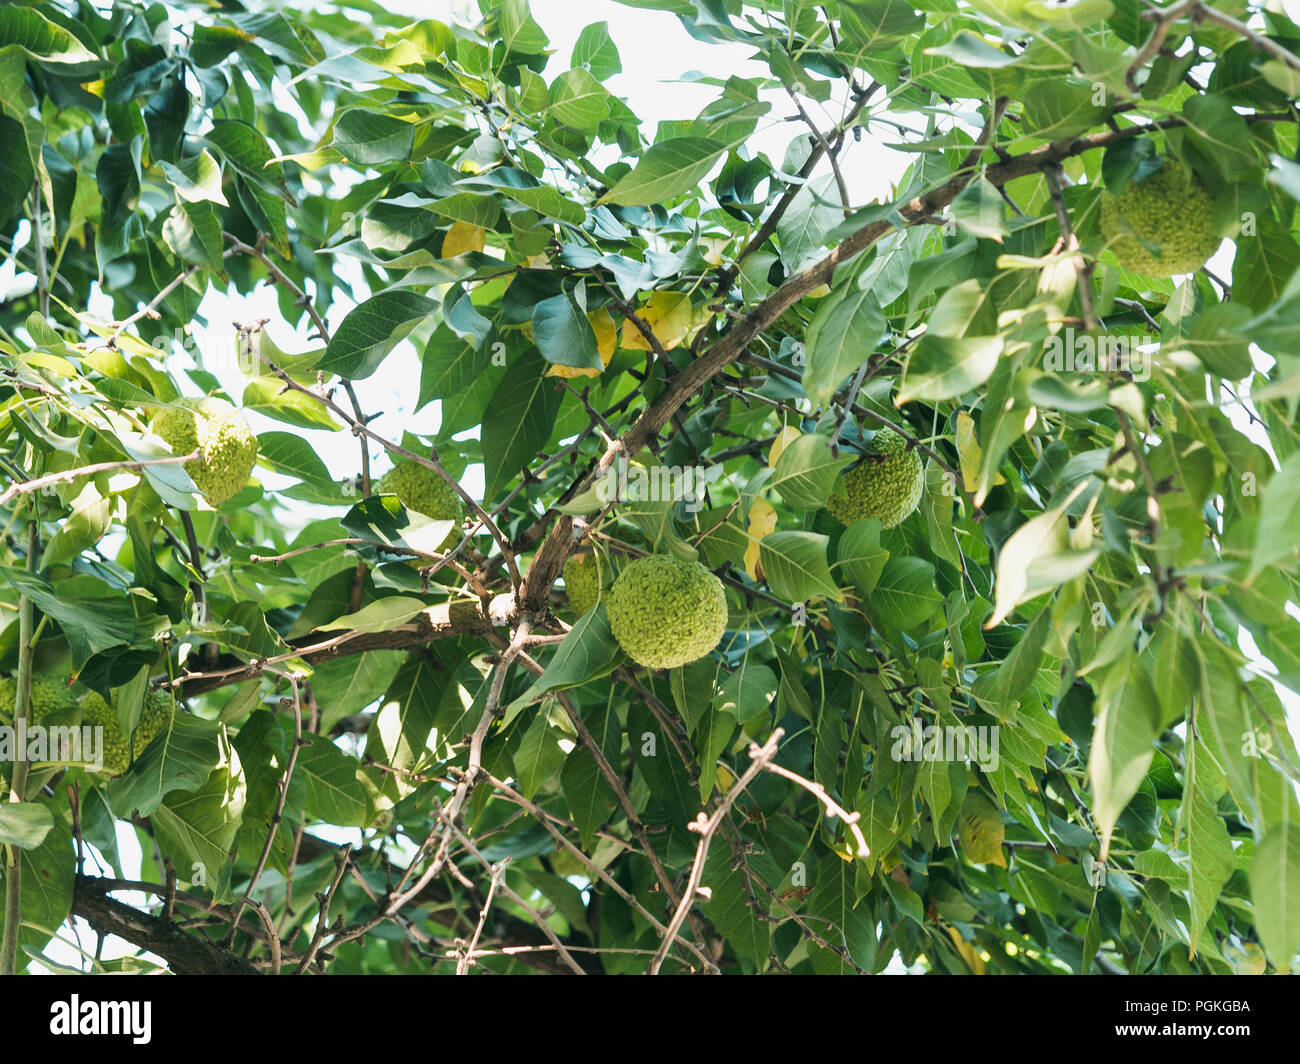 Grüne Früchte von maclura pomifera Osage orange, Apple, Adam's Apple im Wilden am Baum wachsen. Maclura Obst in der alternativen Medizin verwendet, in particul Stockfoto